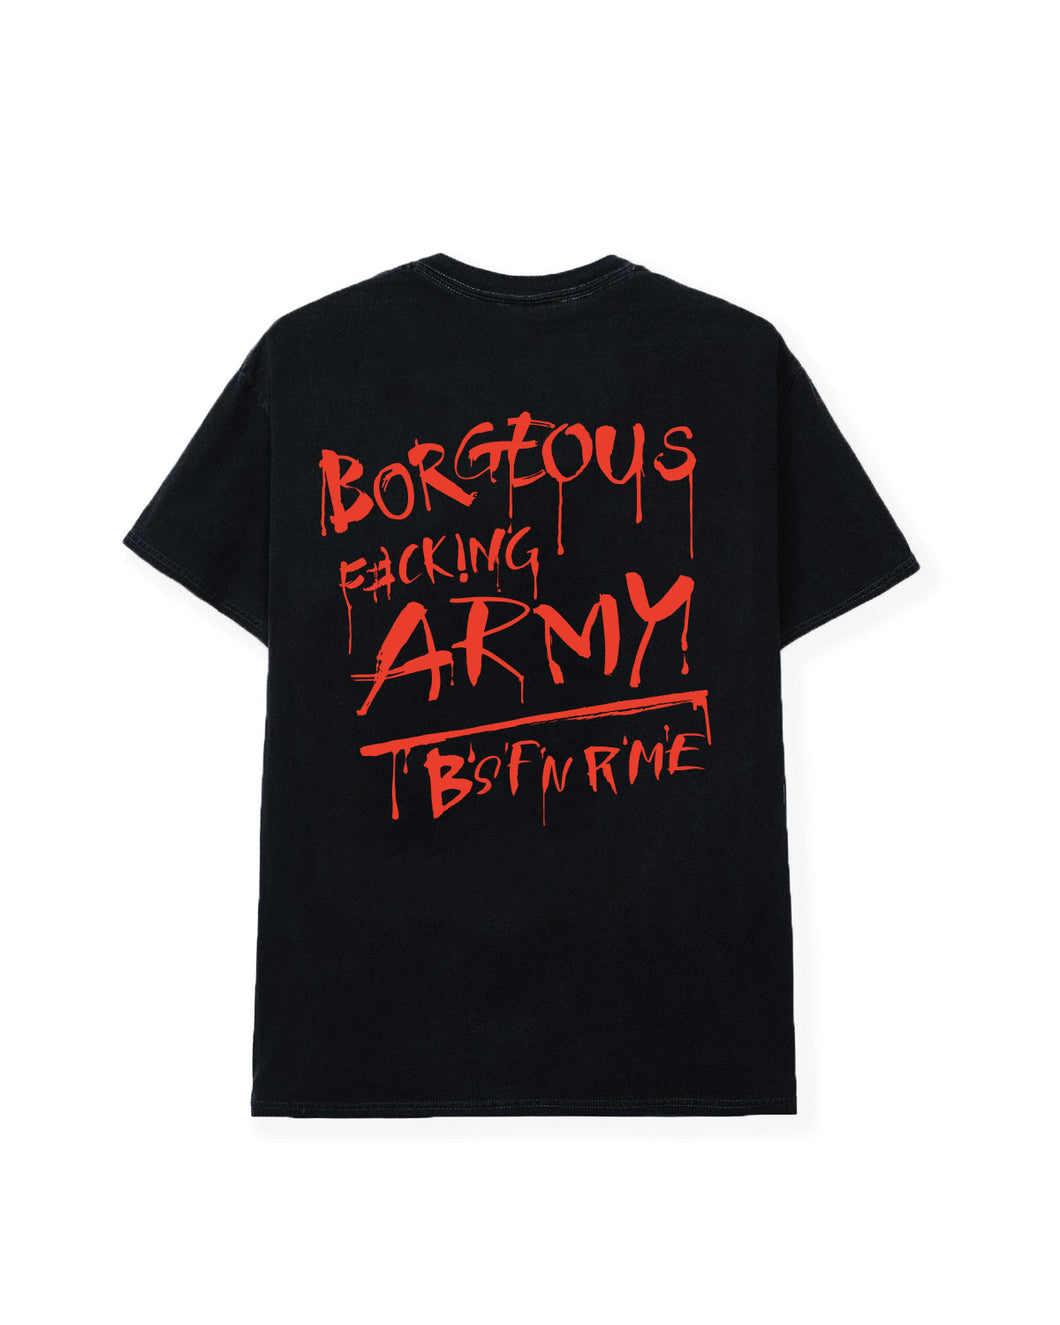 Borgeous F#ck!ng Army Tee